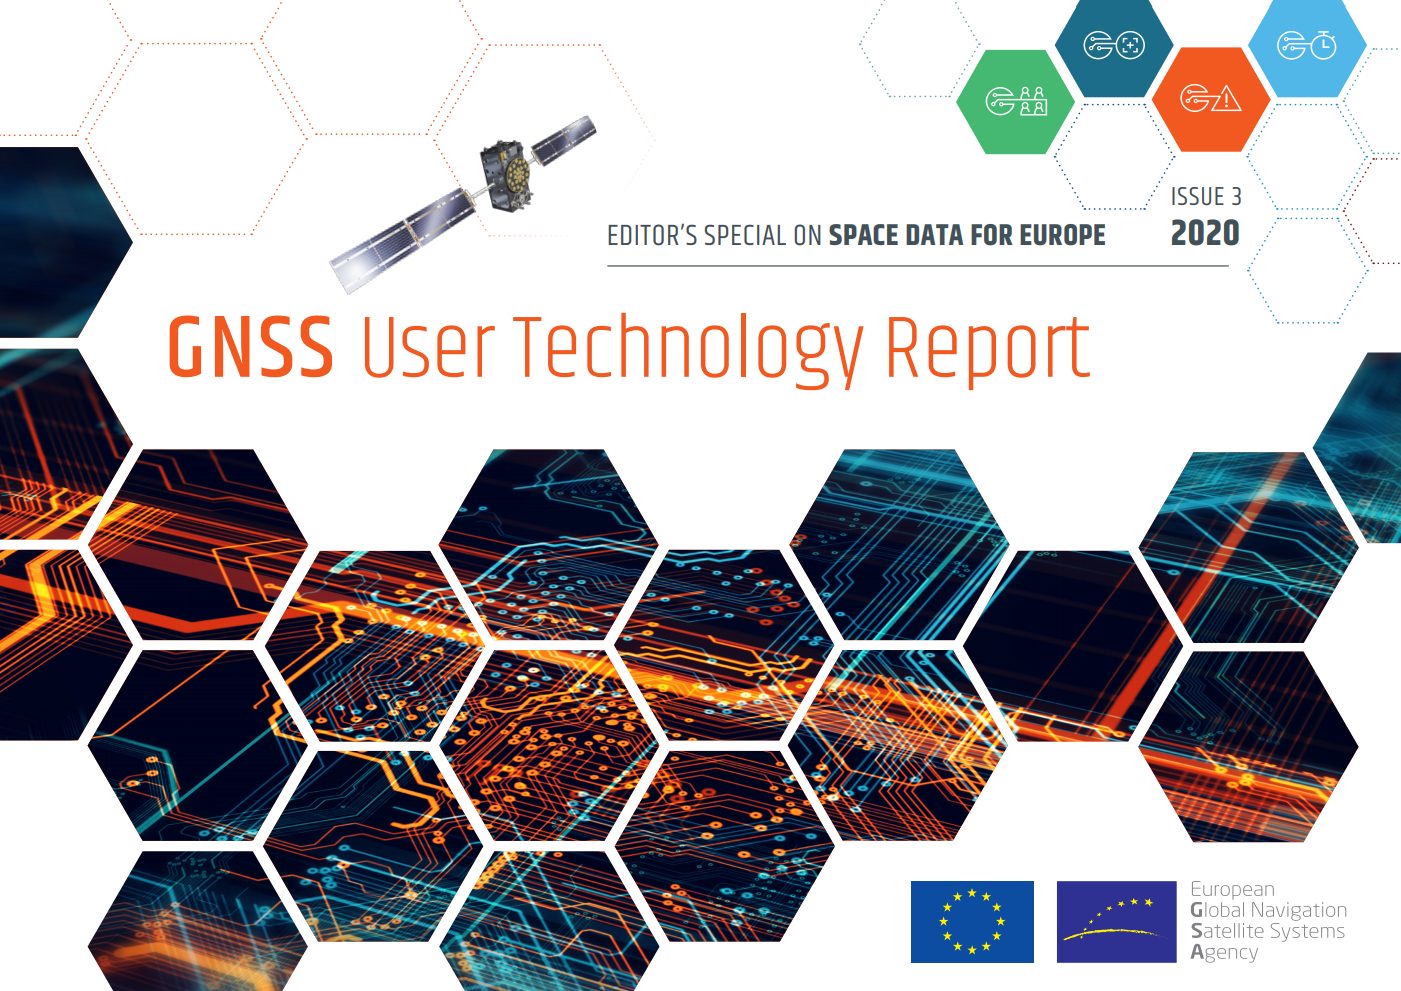 待望のGNSSユーザ技術レポート第3号が遂にリリースされました!